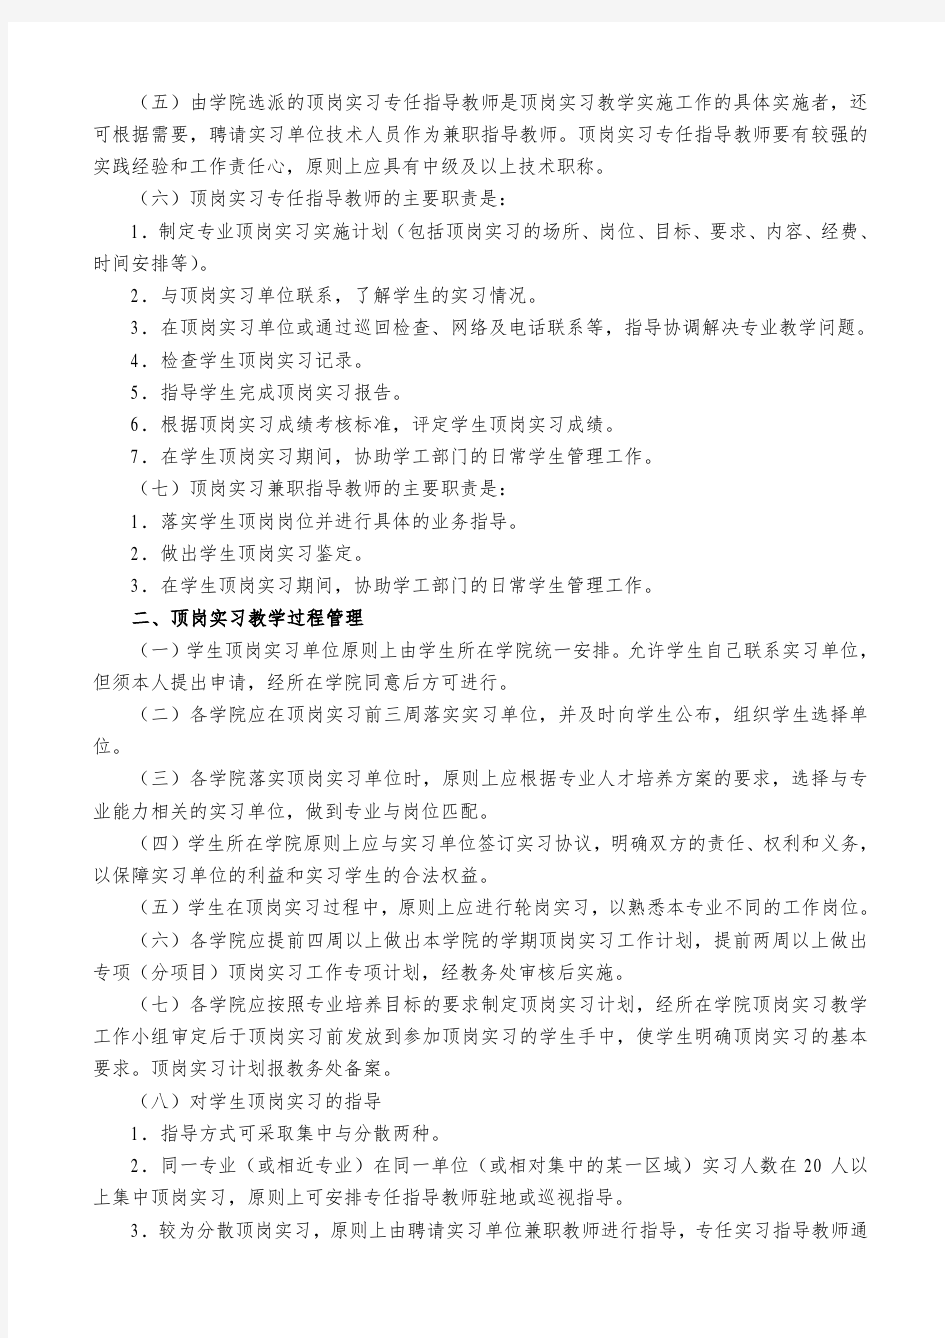 武汉软件工程职业学院顶岗实习教学管理规定